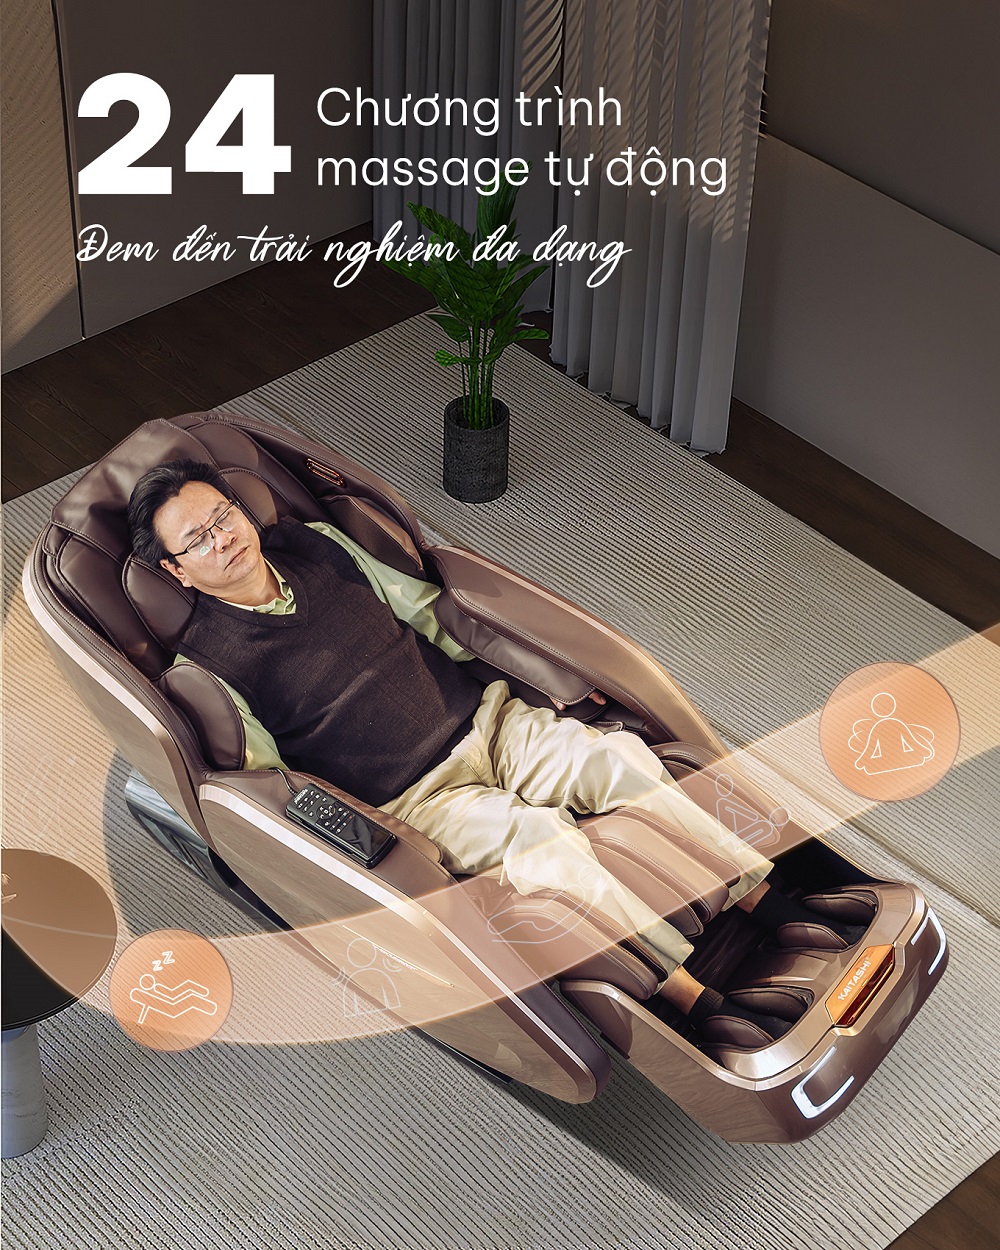 Ghế massage Kaitashi KS-680 tích hợp 24 chương trình massage tự động